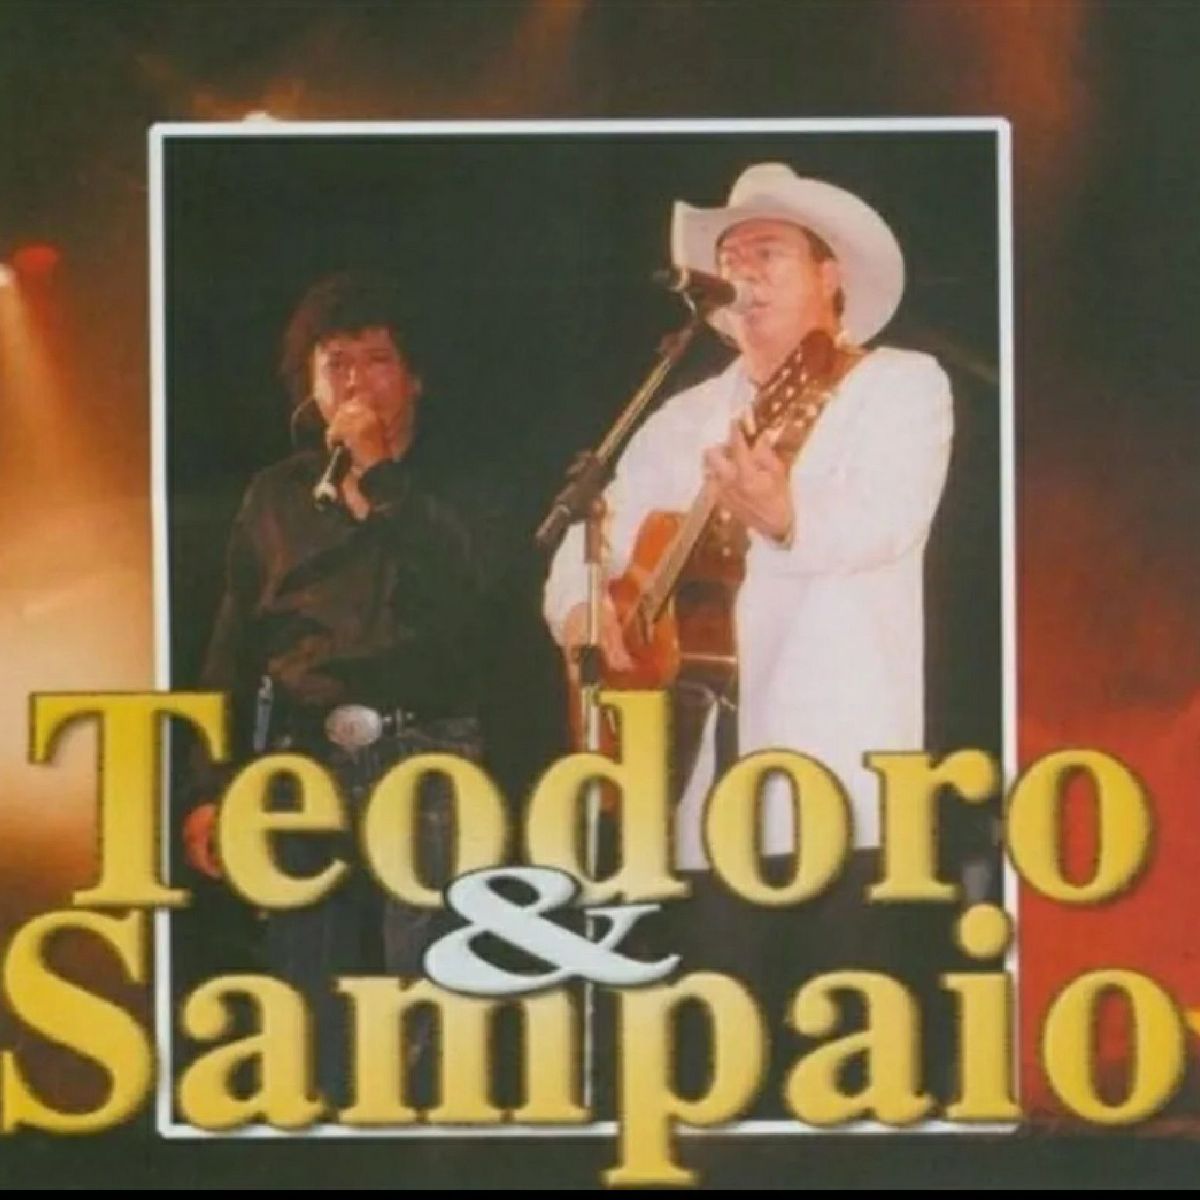 Teodoro & Sampaio – Nos Braços Do Mundo (1981, Vinyl) - Discogs